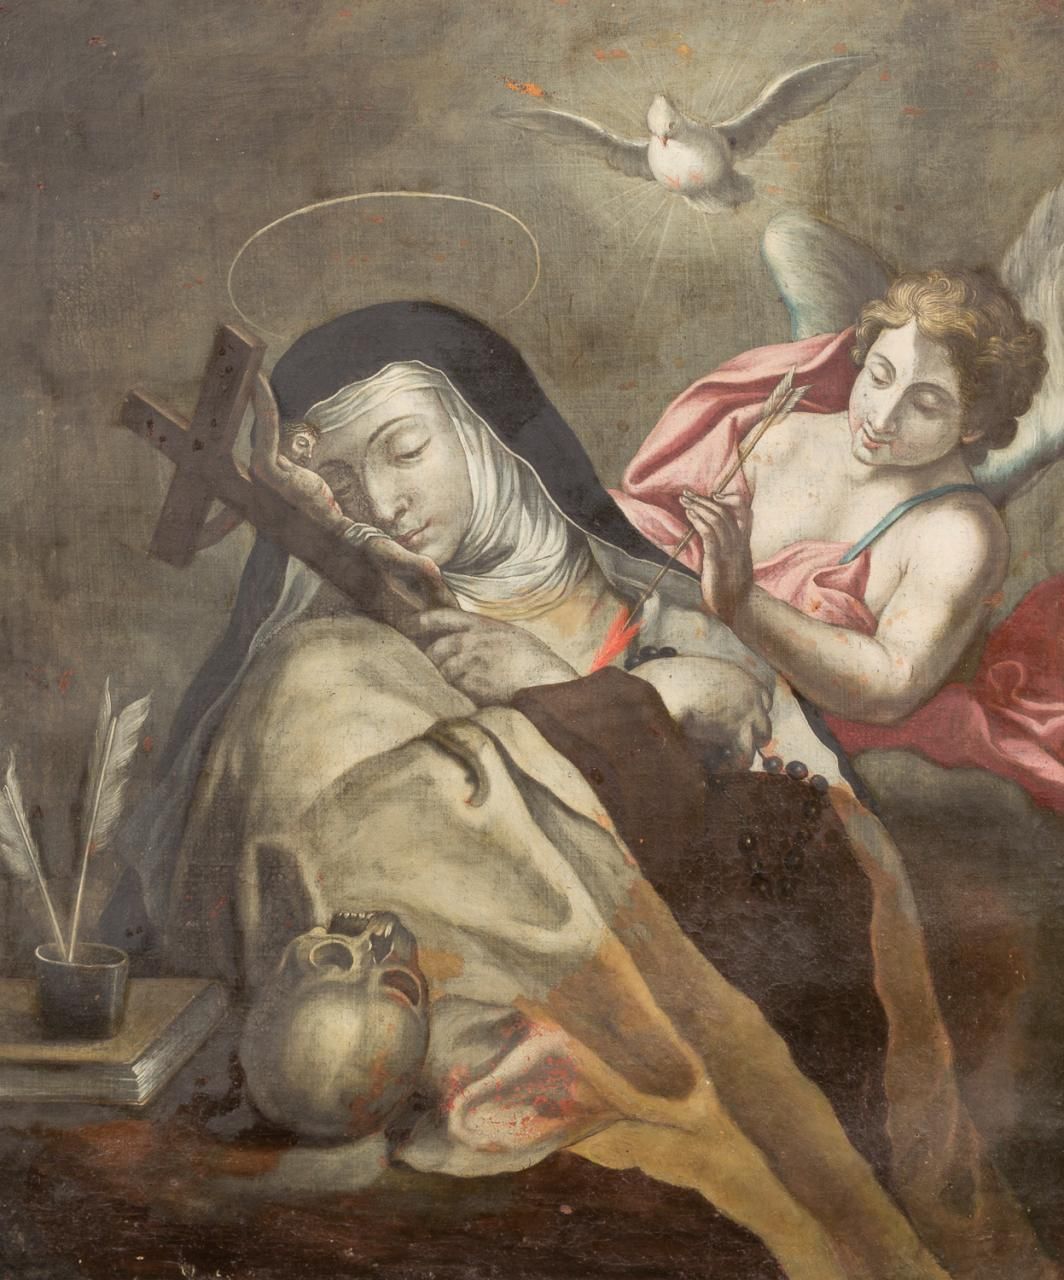 ESCUELA ITALIANA, S. XVII Ekstase der Heiligen Teresa
Öl auf Leinwand
77 x 64 cm